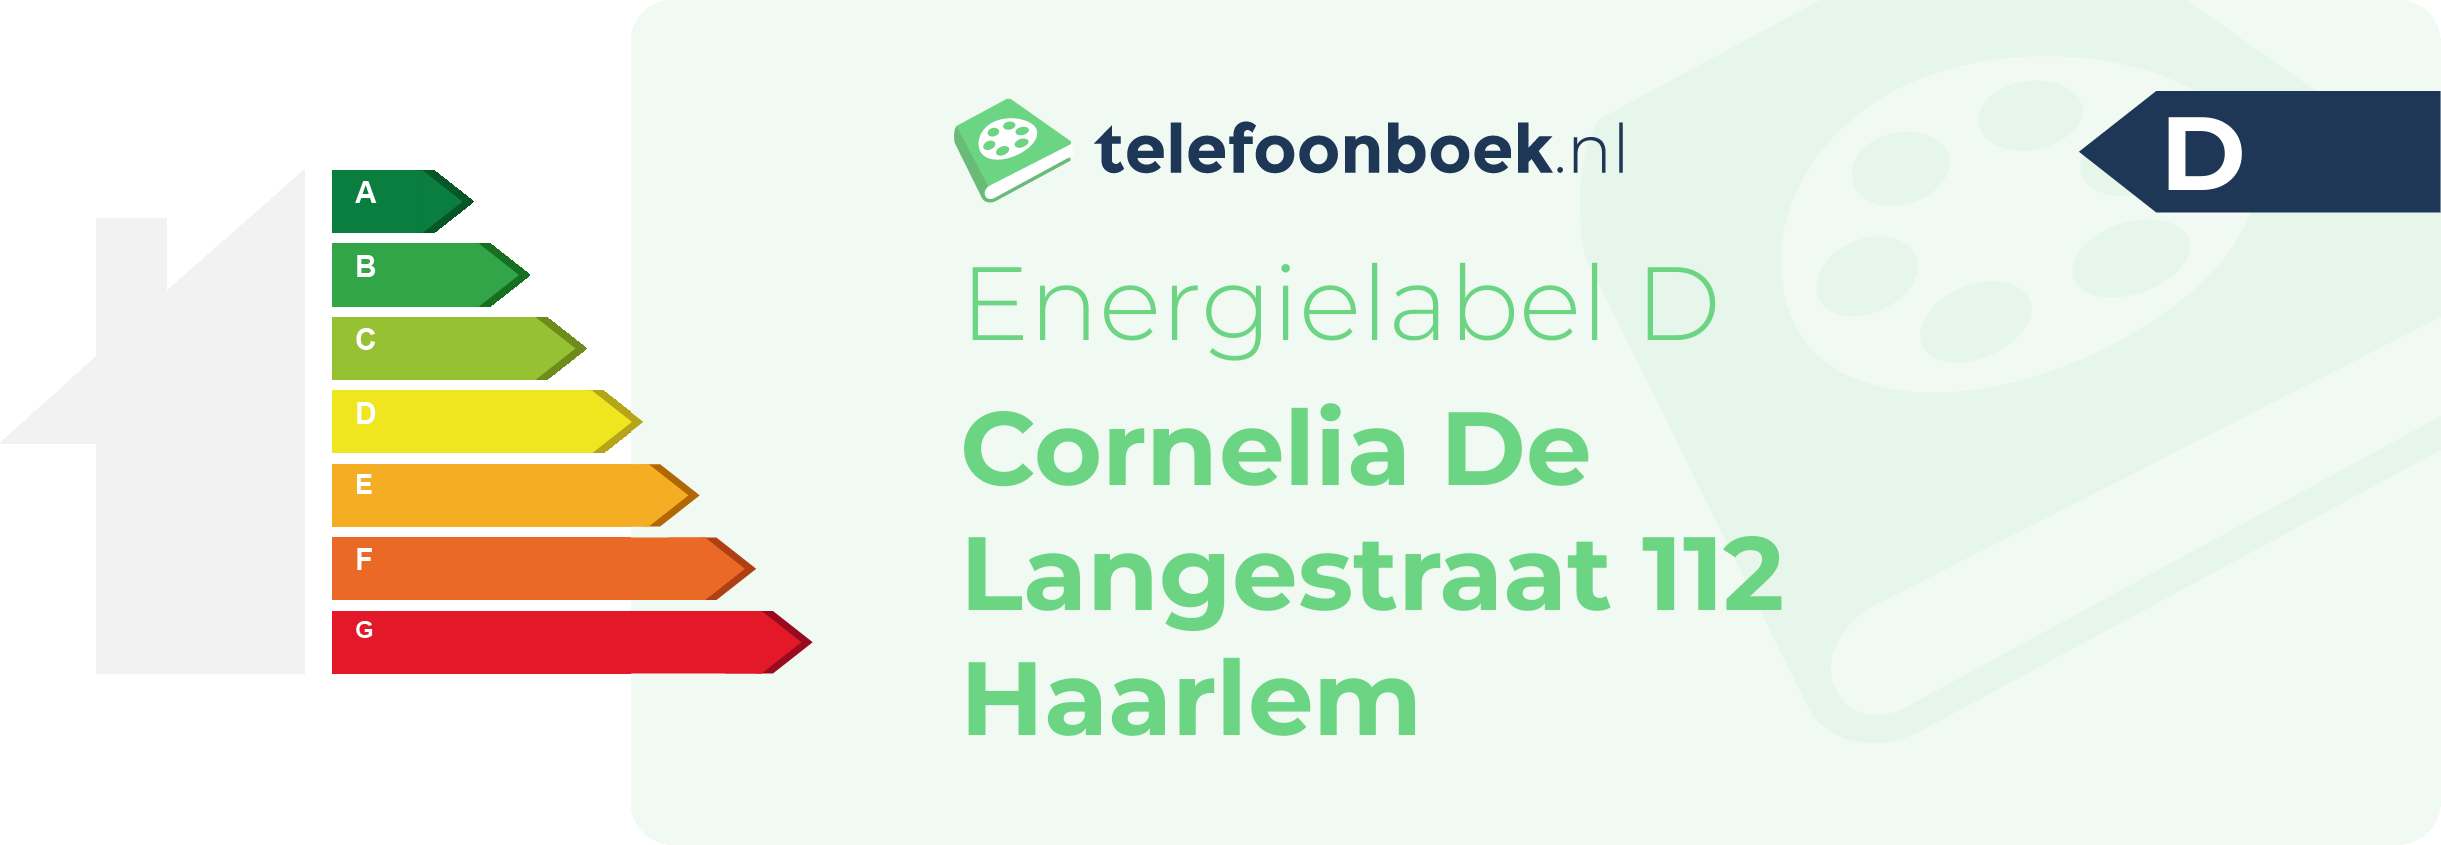 Energielabel Cornelia De Langestraat 112 Haarlem